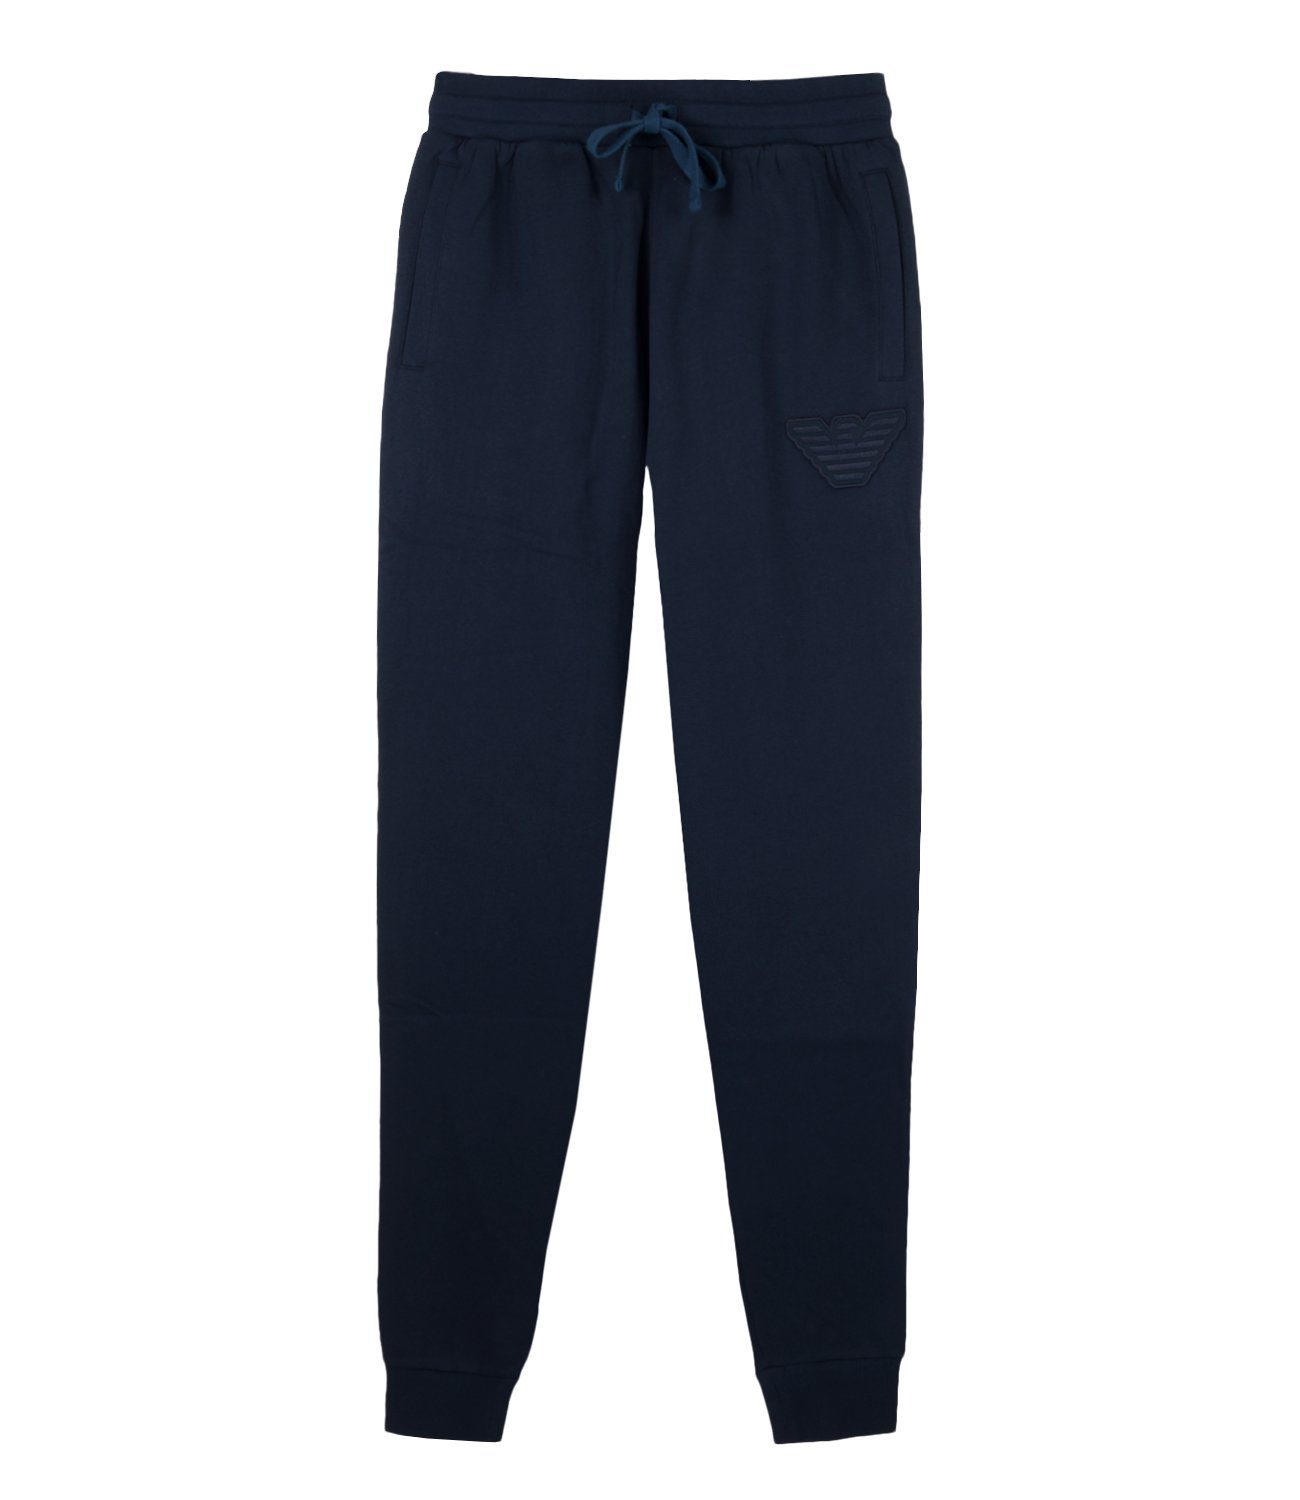 Emporio Armani Loungehose Sweat long Trousers mit gewebtem Zugband 1A571-111690-00135 marine